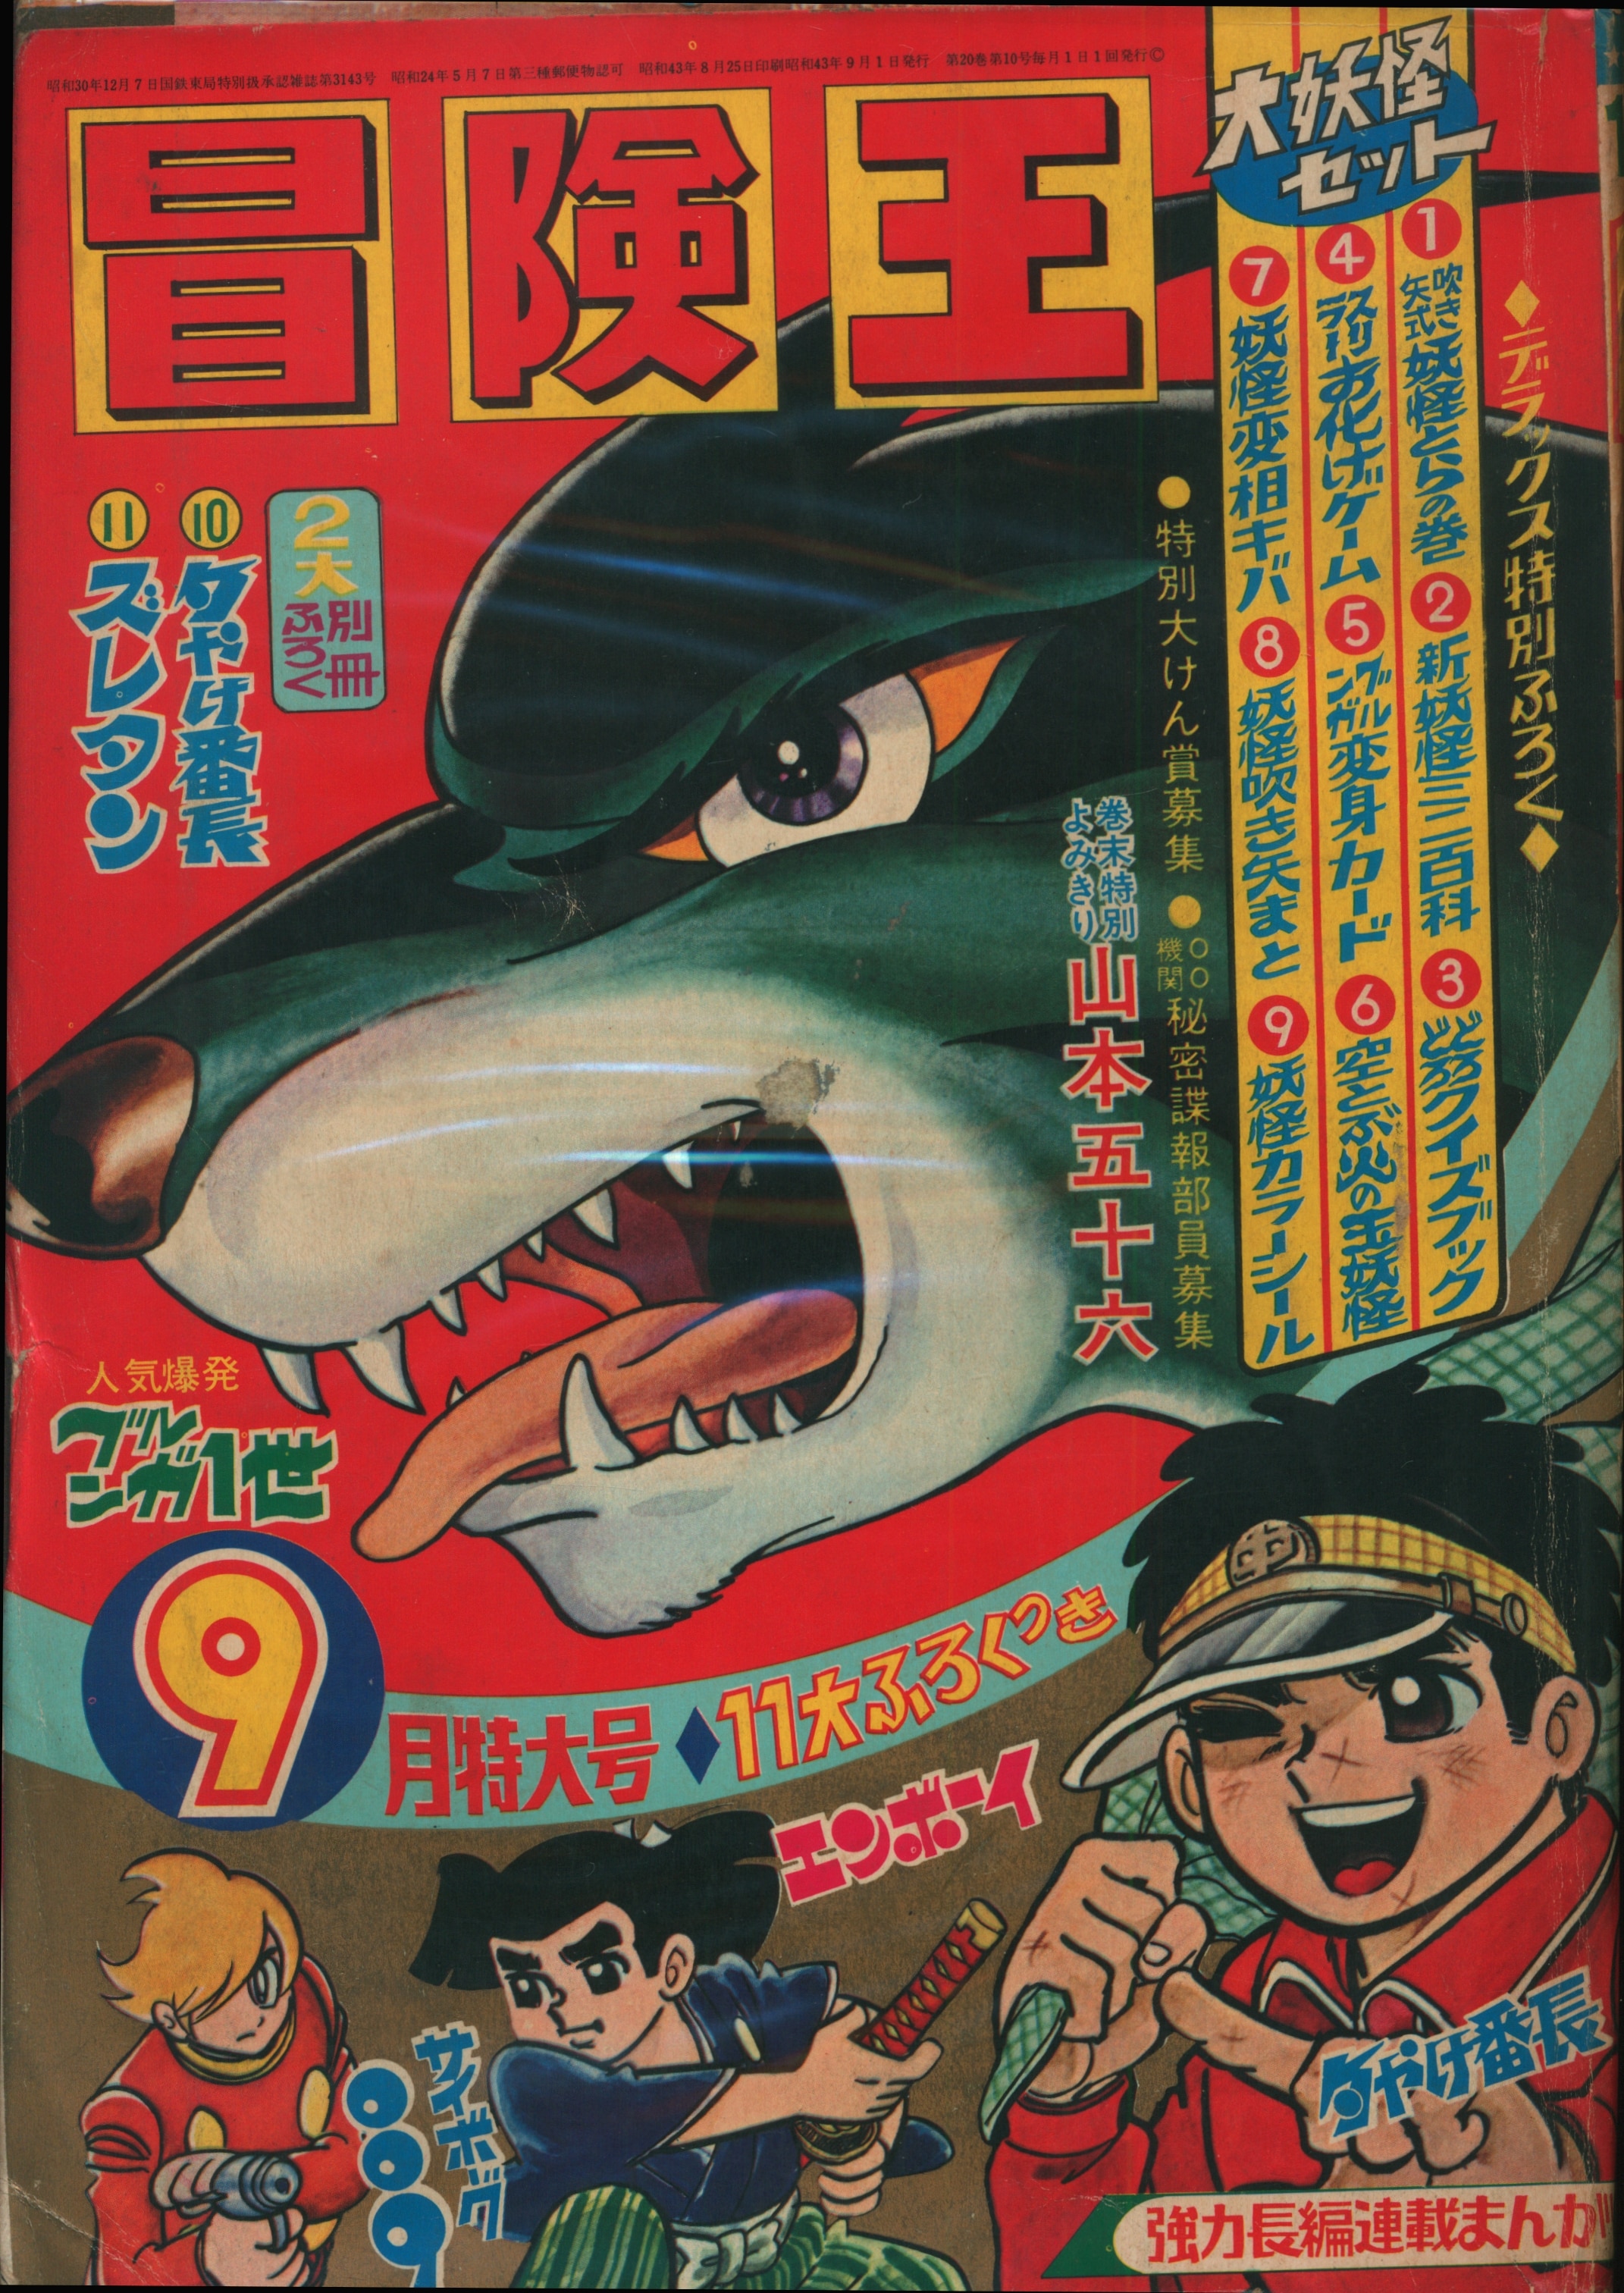 秋田書店 1968年(昭和43年)の漫画雑誌 冒険王 1968年(昭和43年)09月号